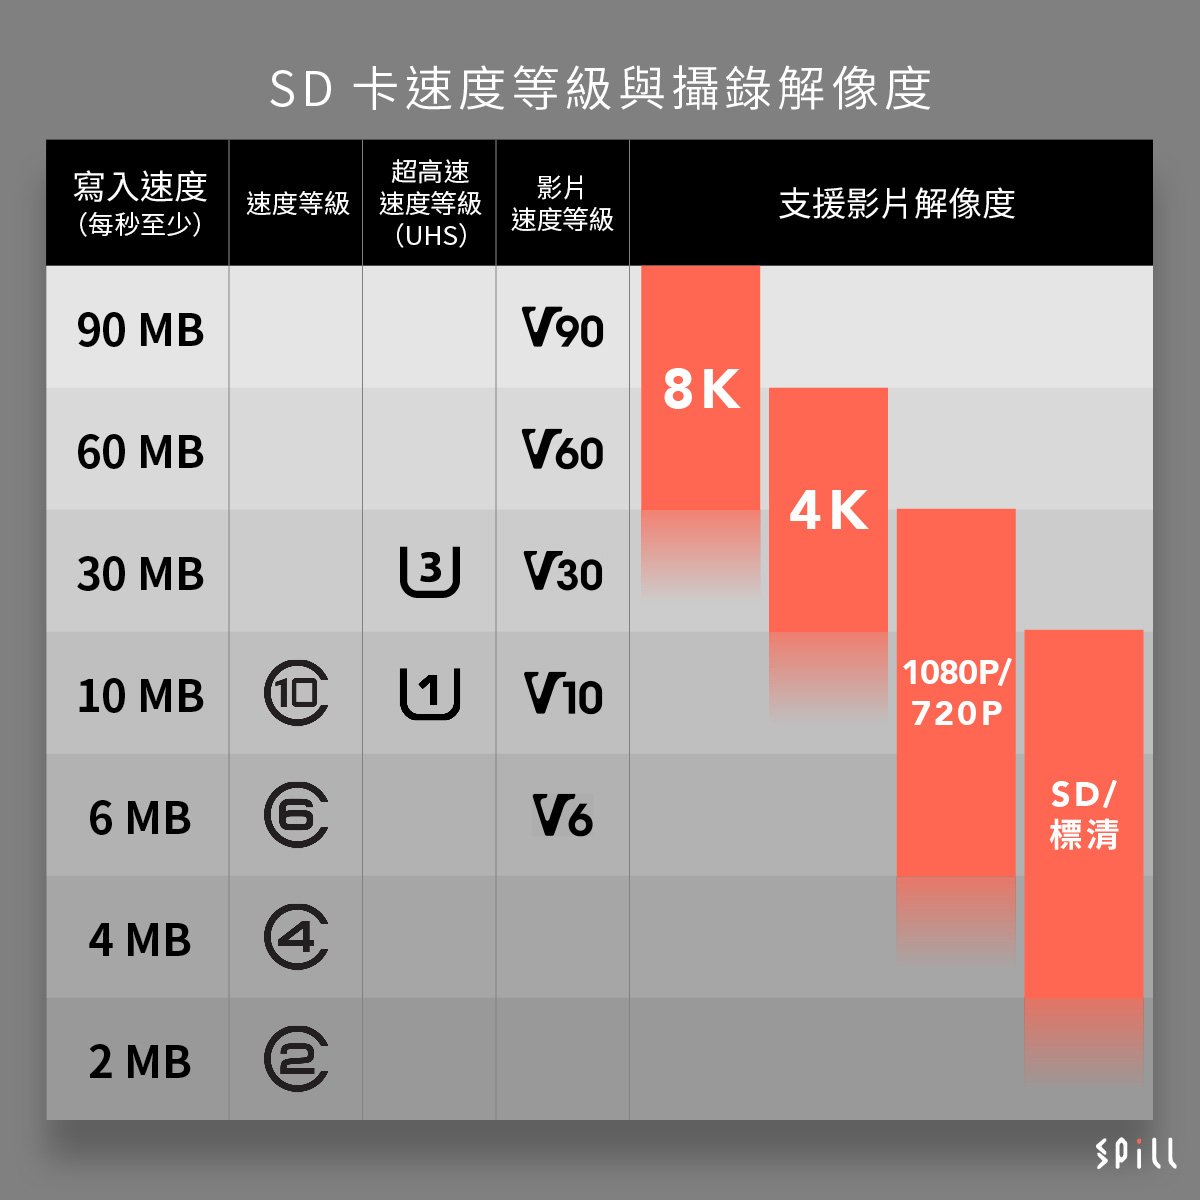 市面上陸續有支援 8K 攝錄的相機、攝錄機推出，如果以 SD 卡記錄的話，到底要幾高速度才支援？一直以來 SD 卡的速度規格其實頗混亂，經過多年的發展，出現過很多套不同標準，今次就同大家詳細解釋一下各個標準所代表的速度和規格，SD 卡上面的各種標誌又代表甚麼意思，要達到甚麼標準才支援 4K 和 8K 攝錄？